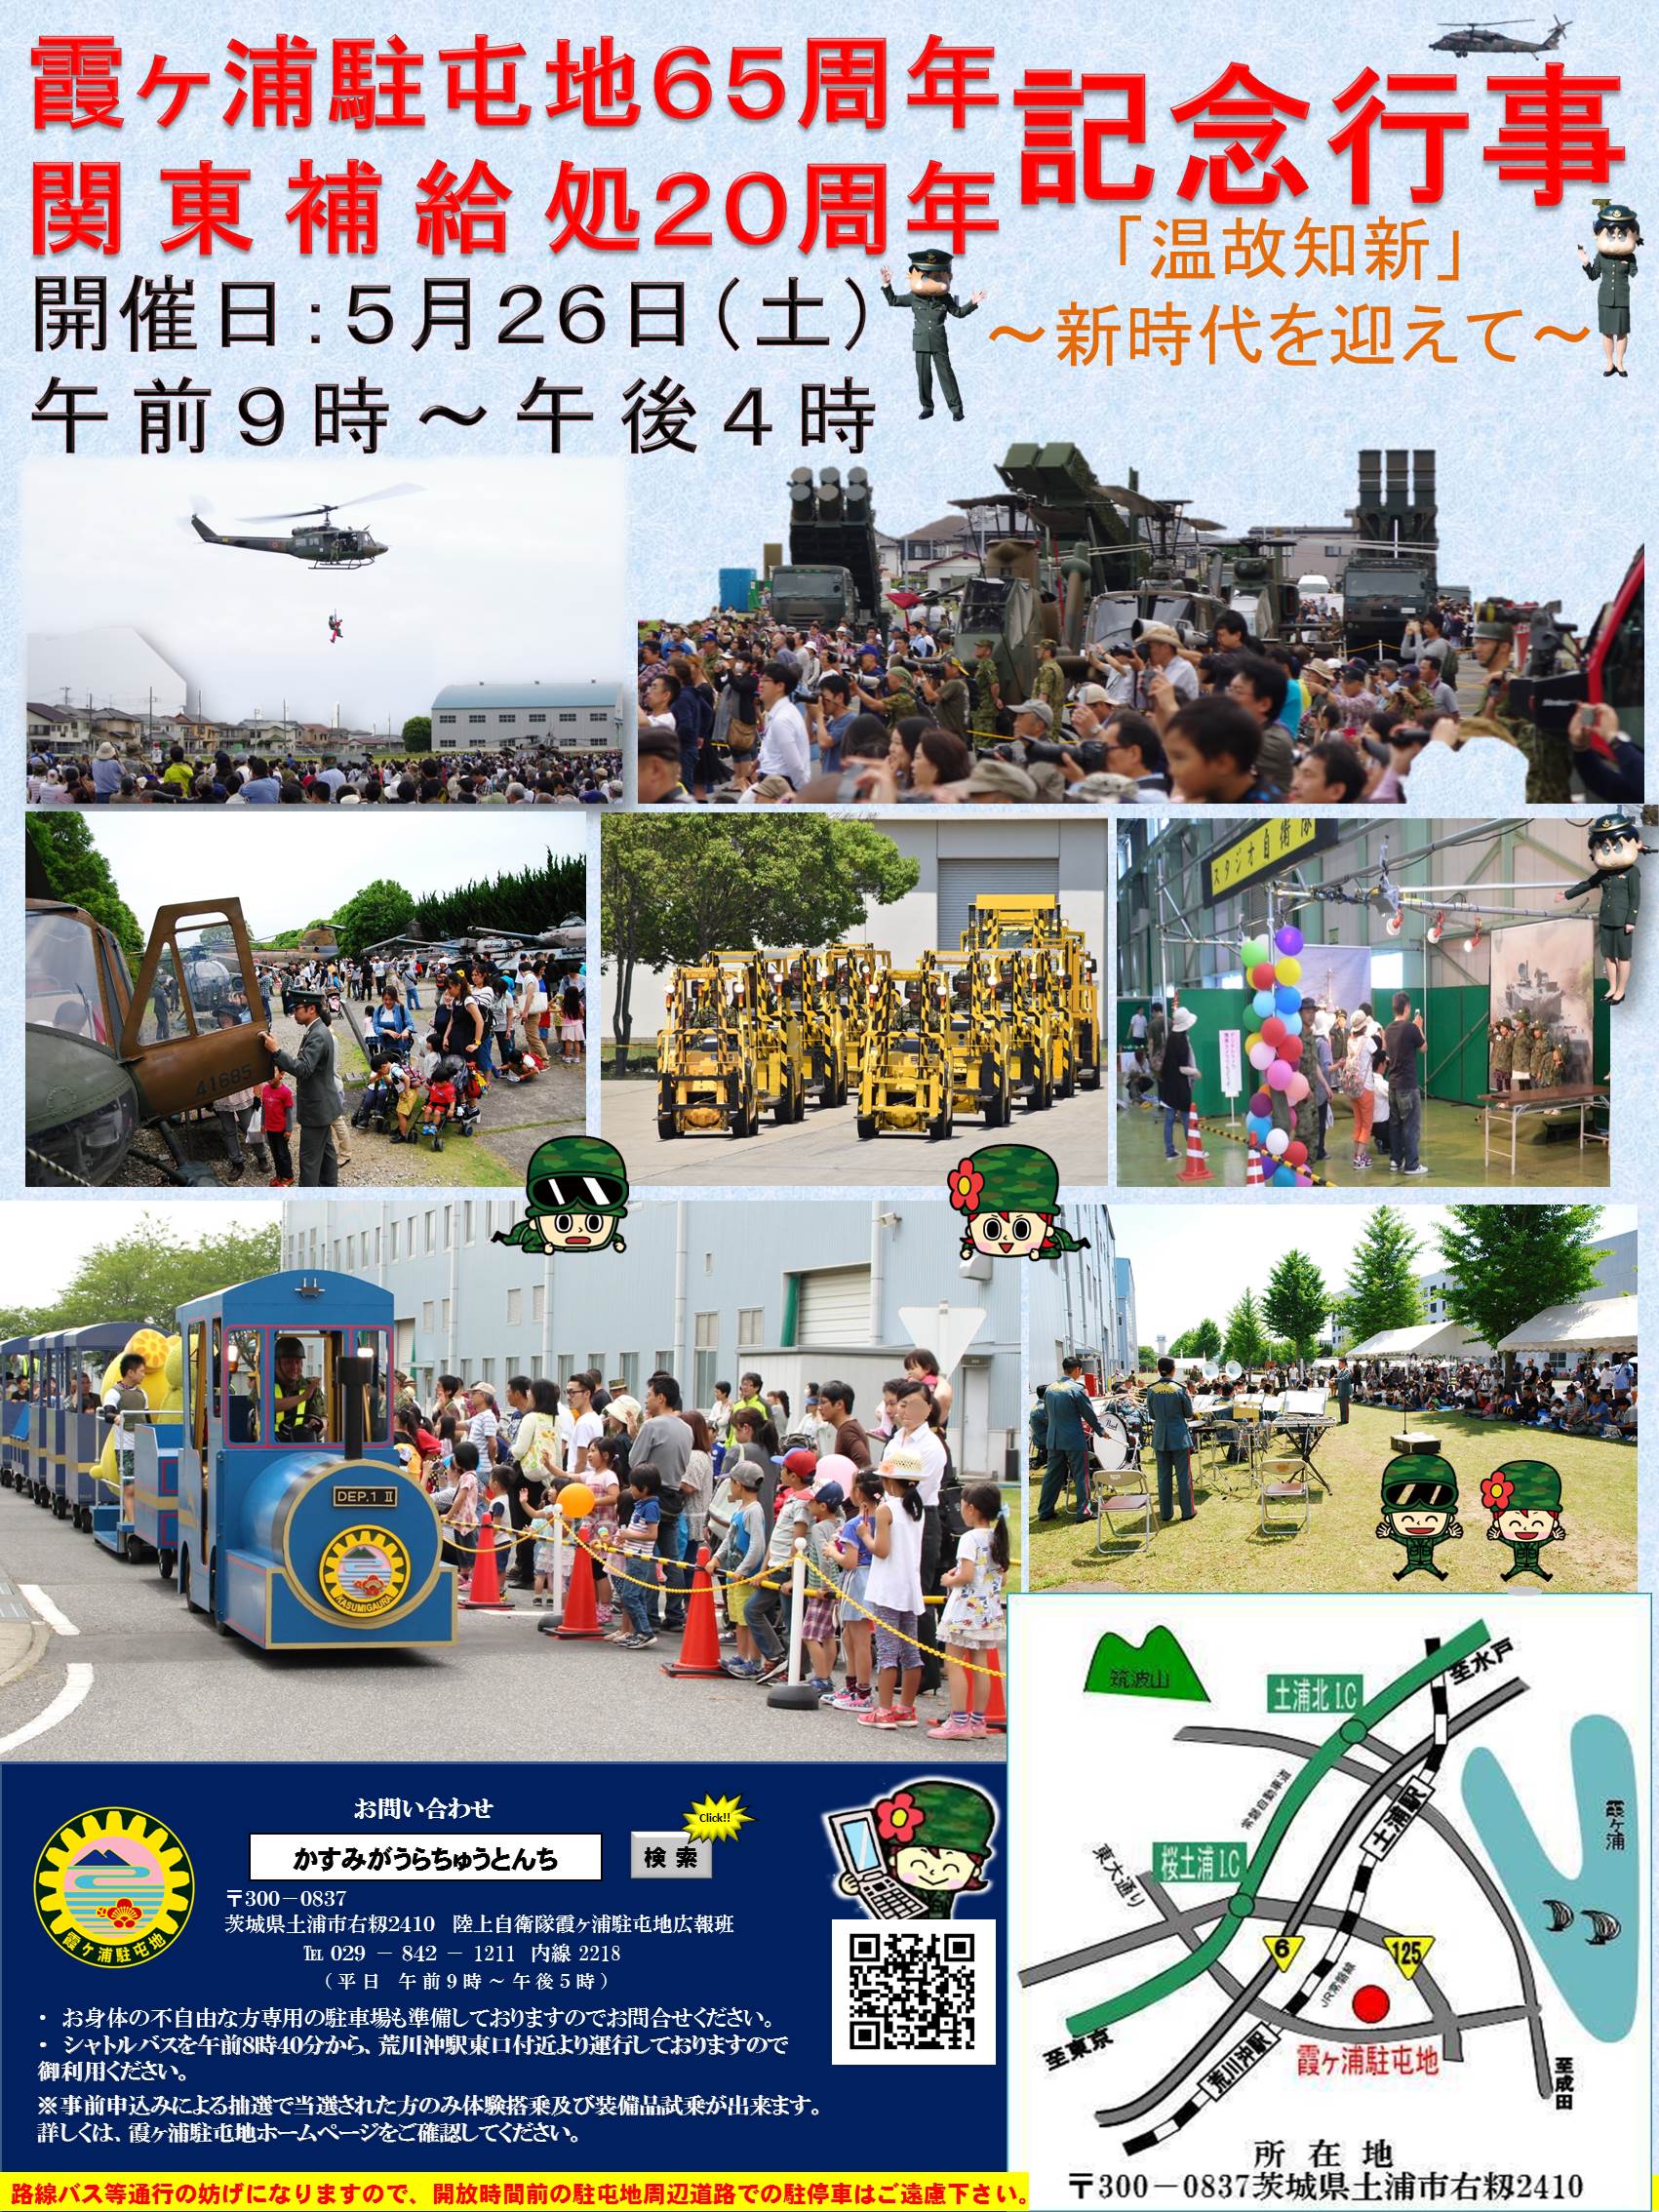 霞ヶ浦駐屯地開設６５周年及び関東補給処創立２０周年記念行事画像